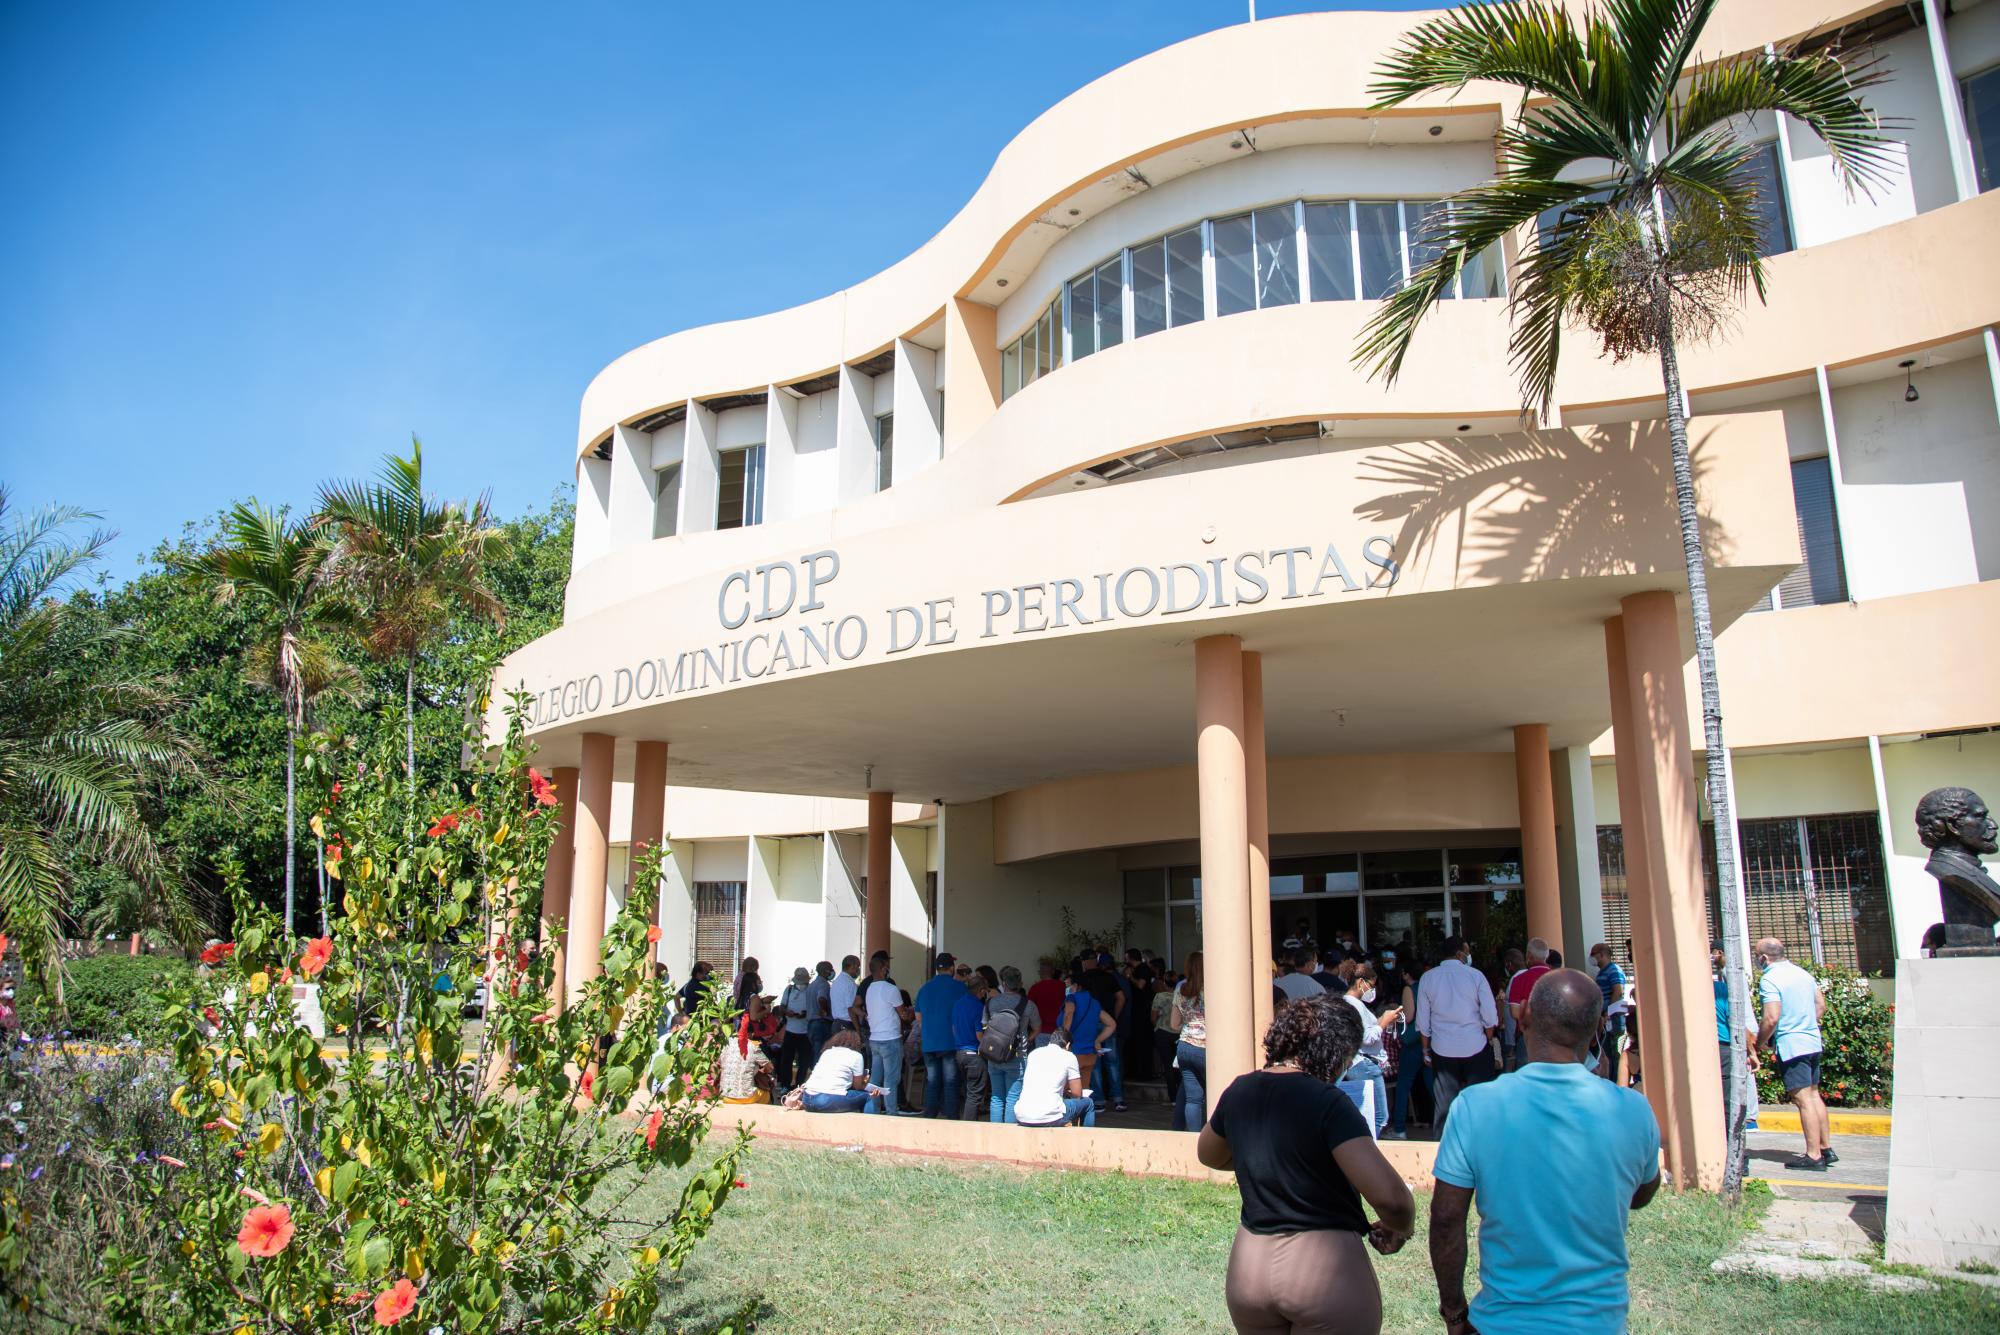 La sede del Colegio Dominicano de Periodistas vivió dos jornadas intensas el fin de semana (Foto: Dania Acevedo)